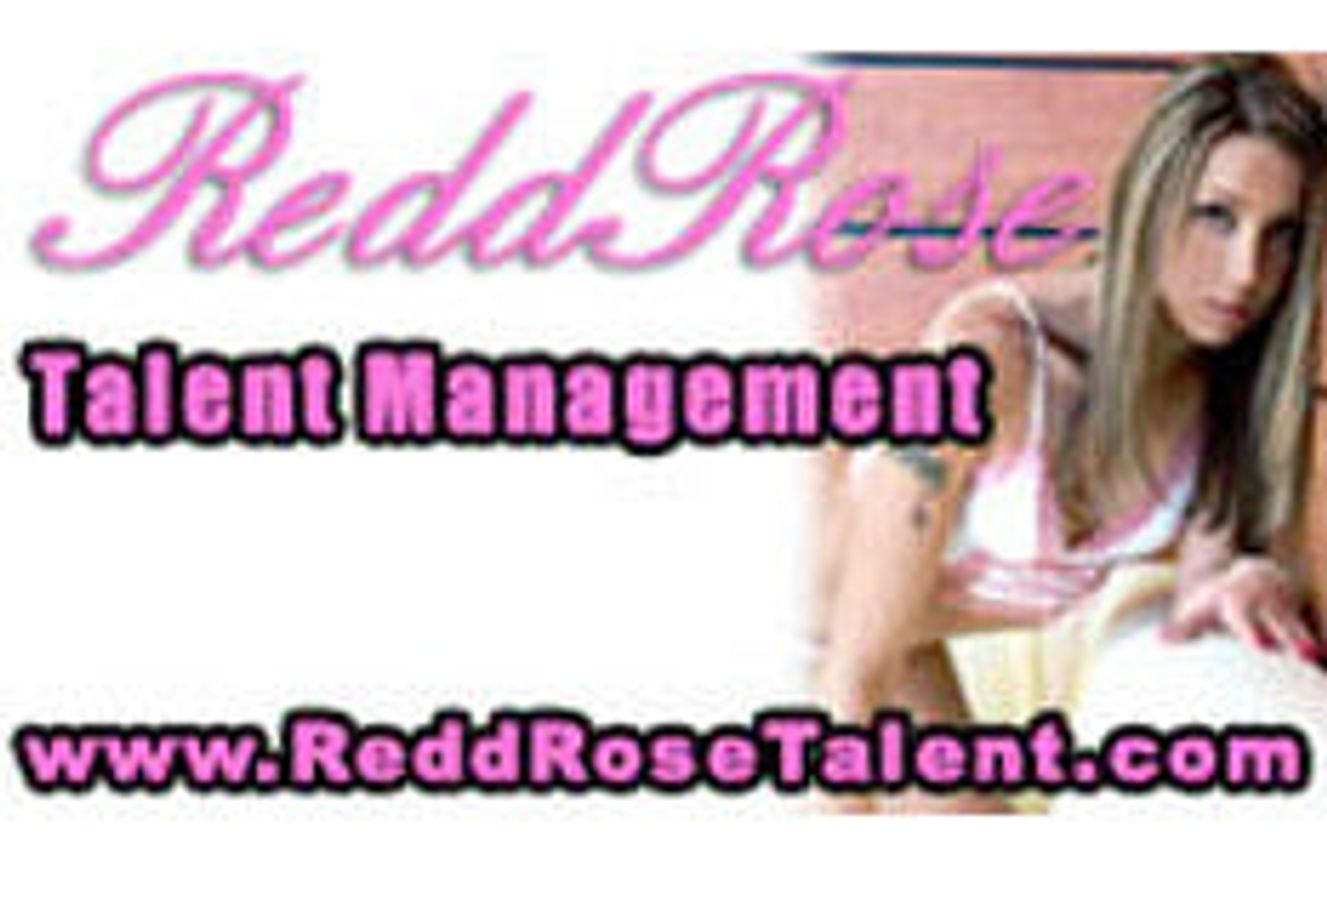 Redd Rose Talent Management